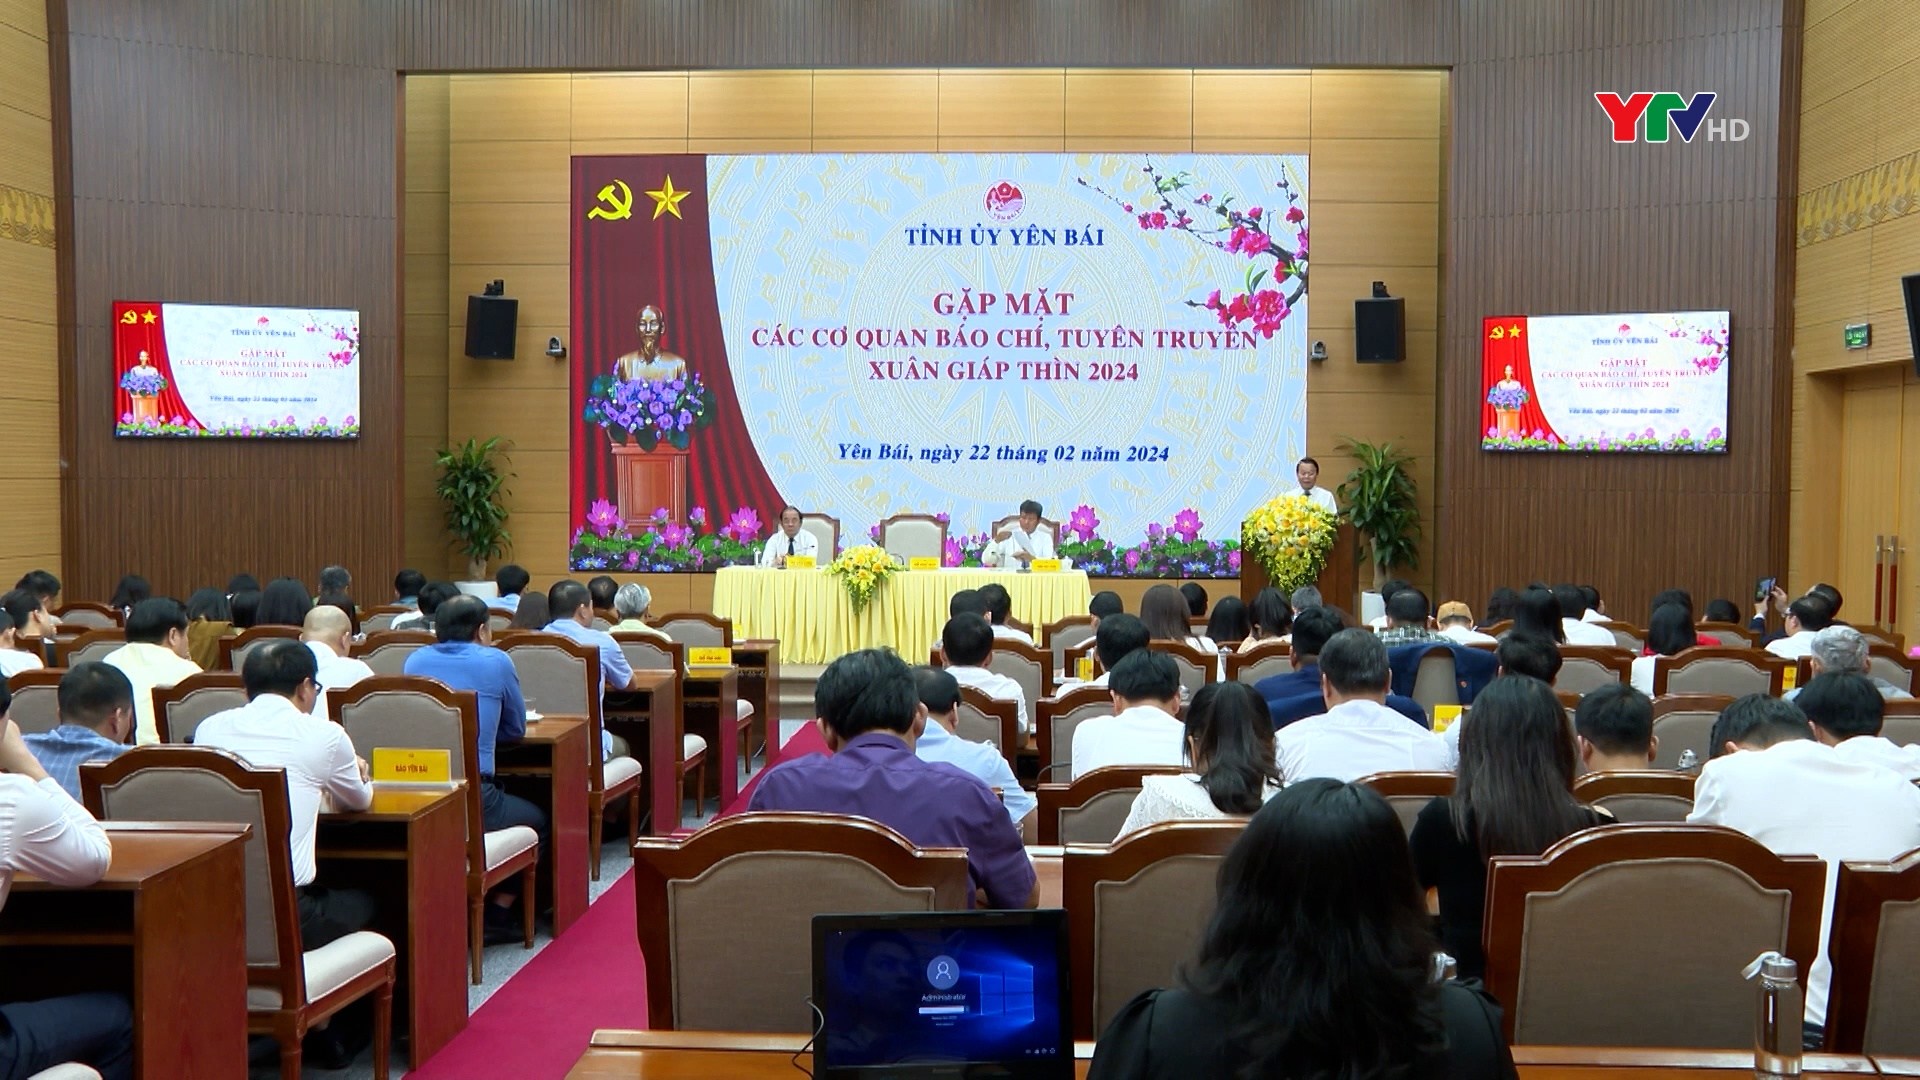 Tỉnh ủy Yên Bái gặp mặt các cơ quan báo chí, tuyên truyền Xuân Giáp Thìn 2024